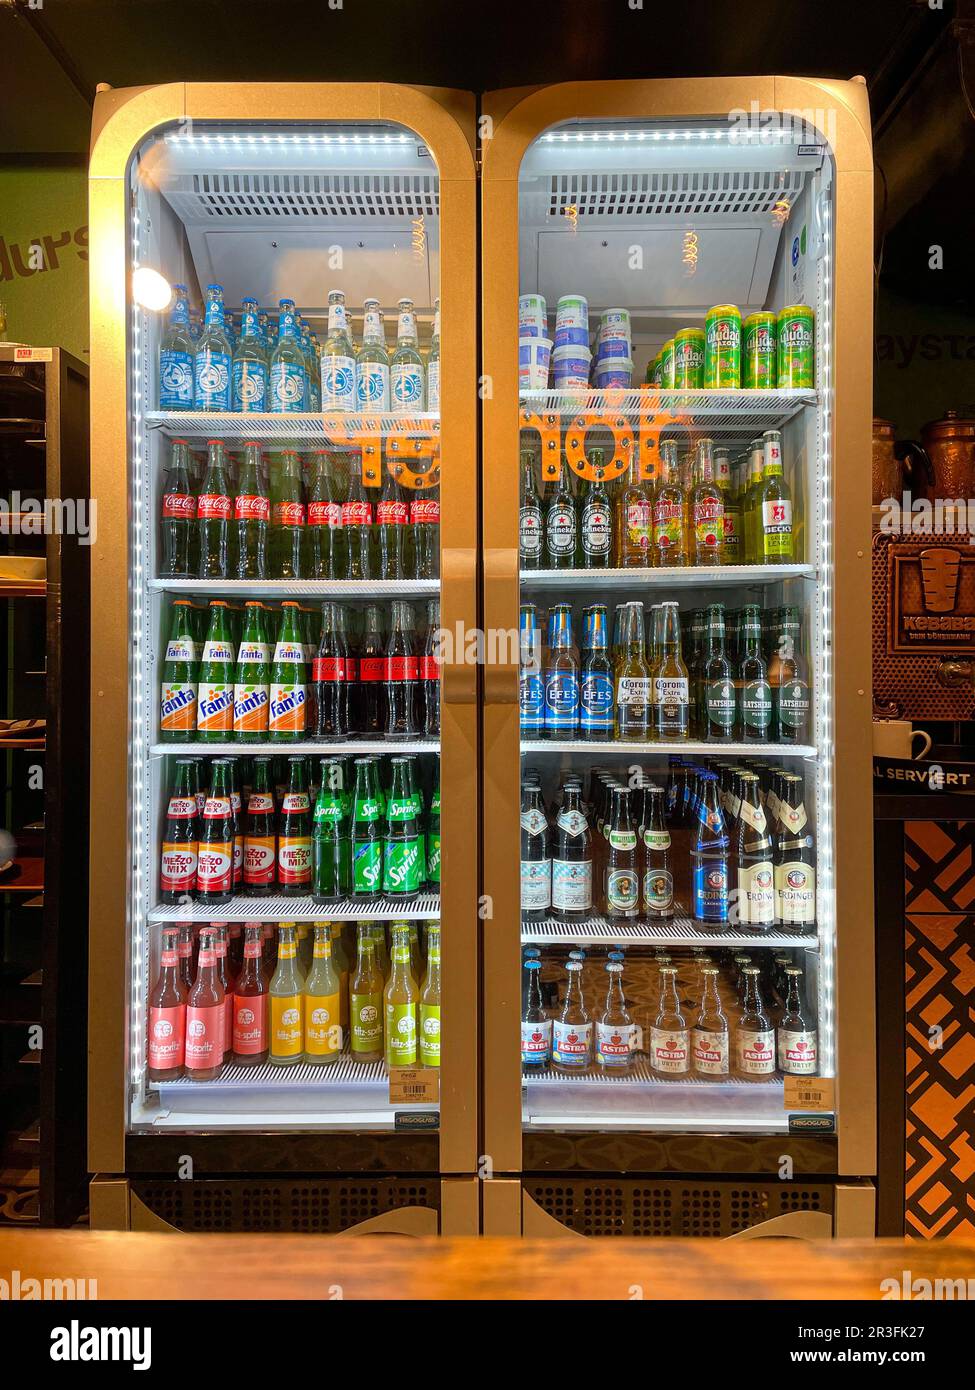 https://c8.alamy.com/comp/2R3FK27/drinks-in-a-fridge-of-a-takeaway-in-hamburg-2R3FK27.jpg